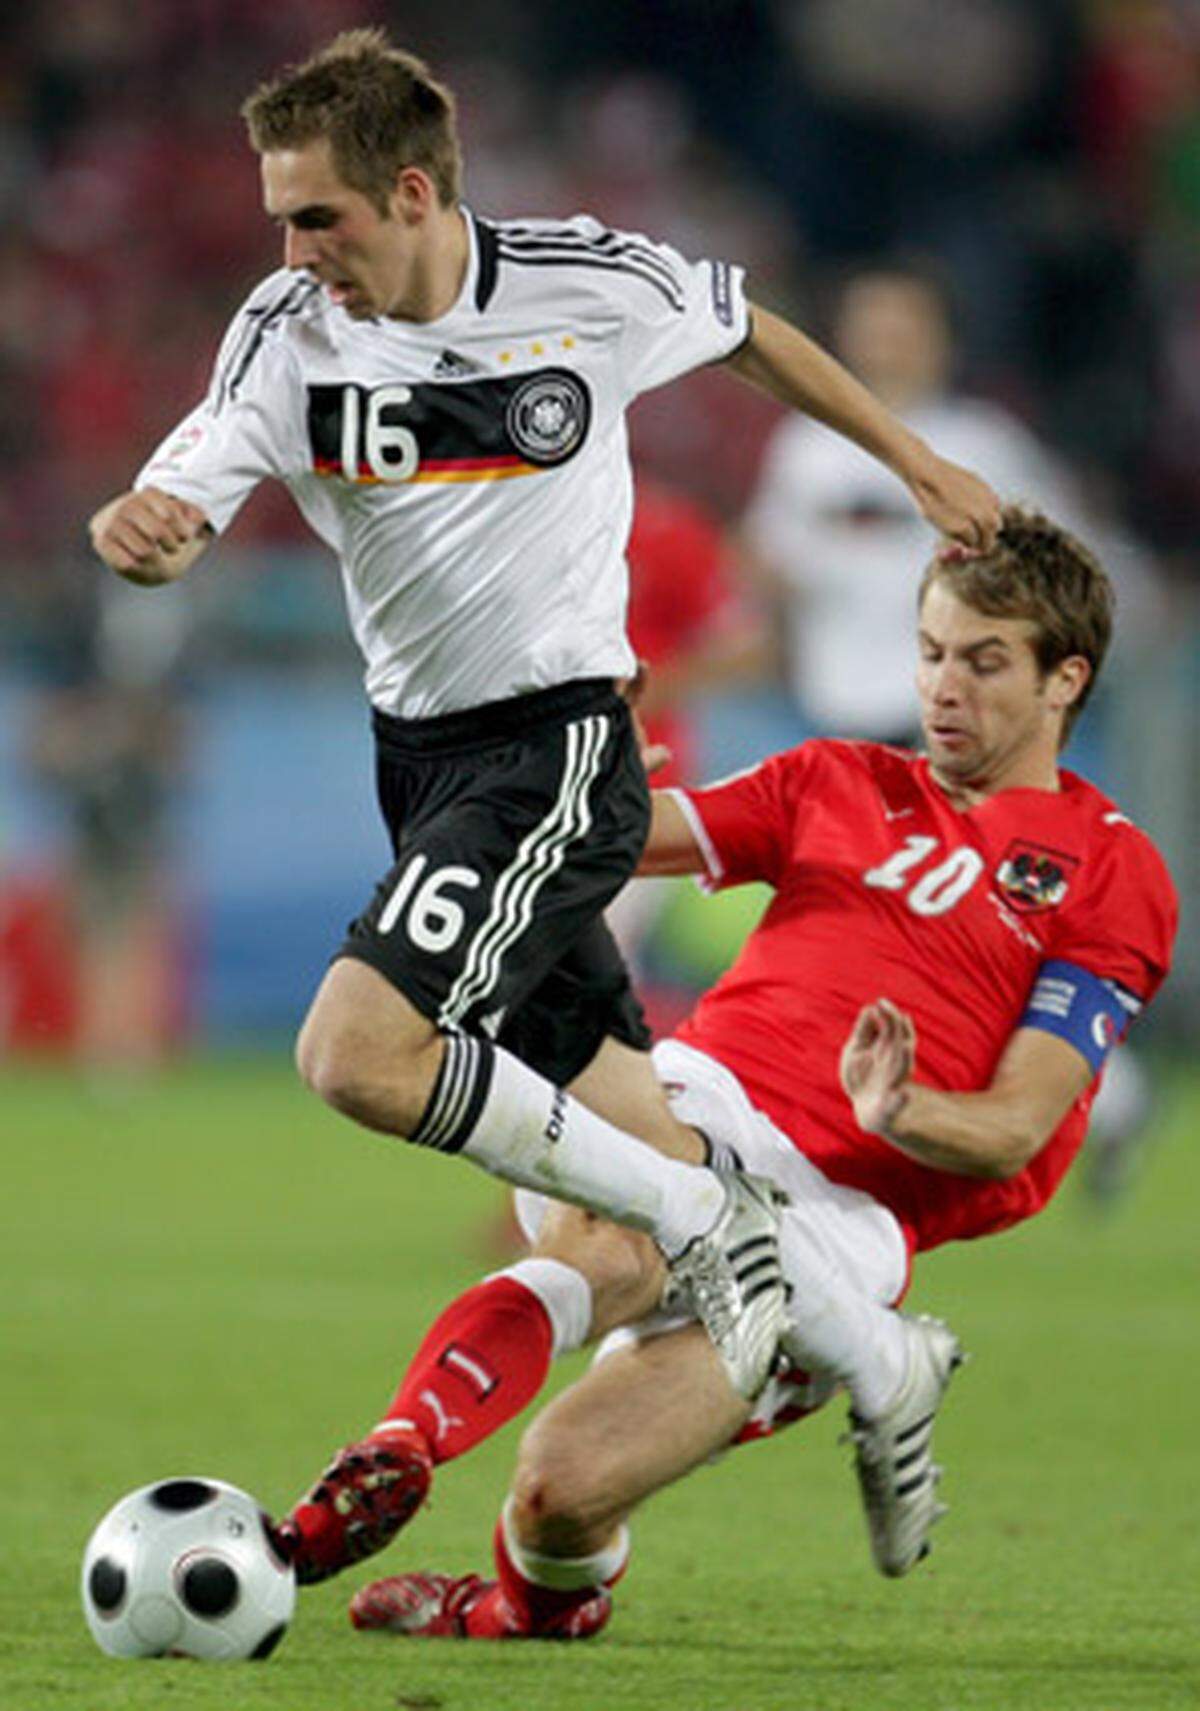 Auch im Nationalteam ging es steil bergab: Im Sommer 2008 erlebte Ivanschitz unter Teamchef Hickersberger noch sein bisheriges Highlight mit der Teilnahme an der Heim-EM als Kapitän.